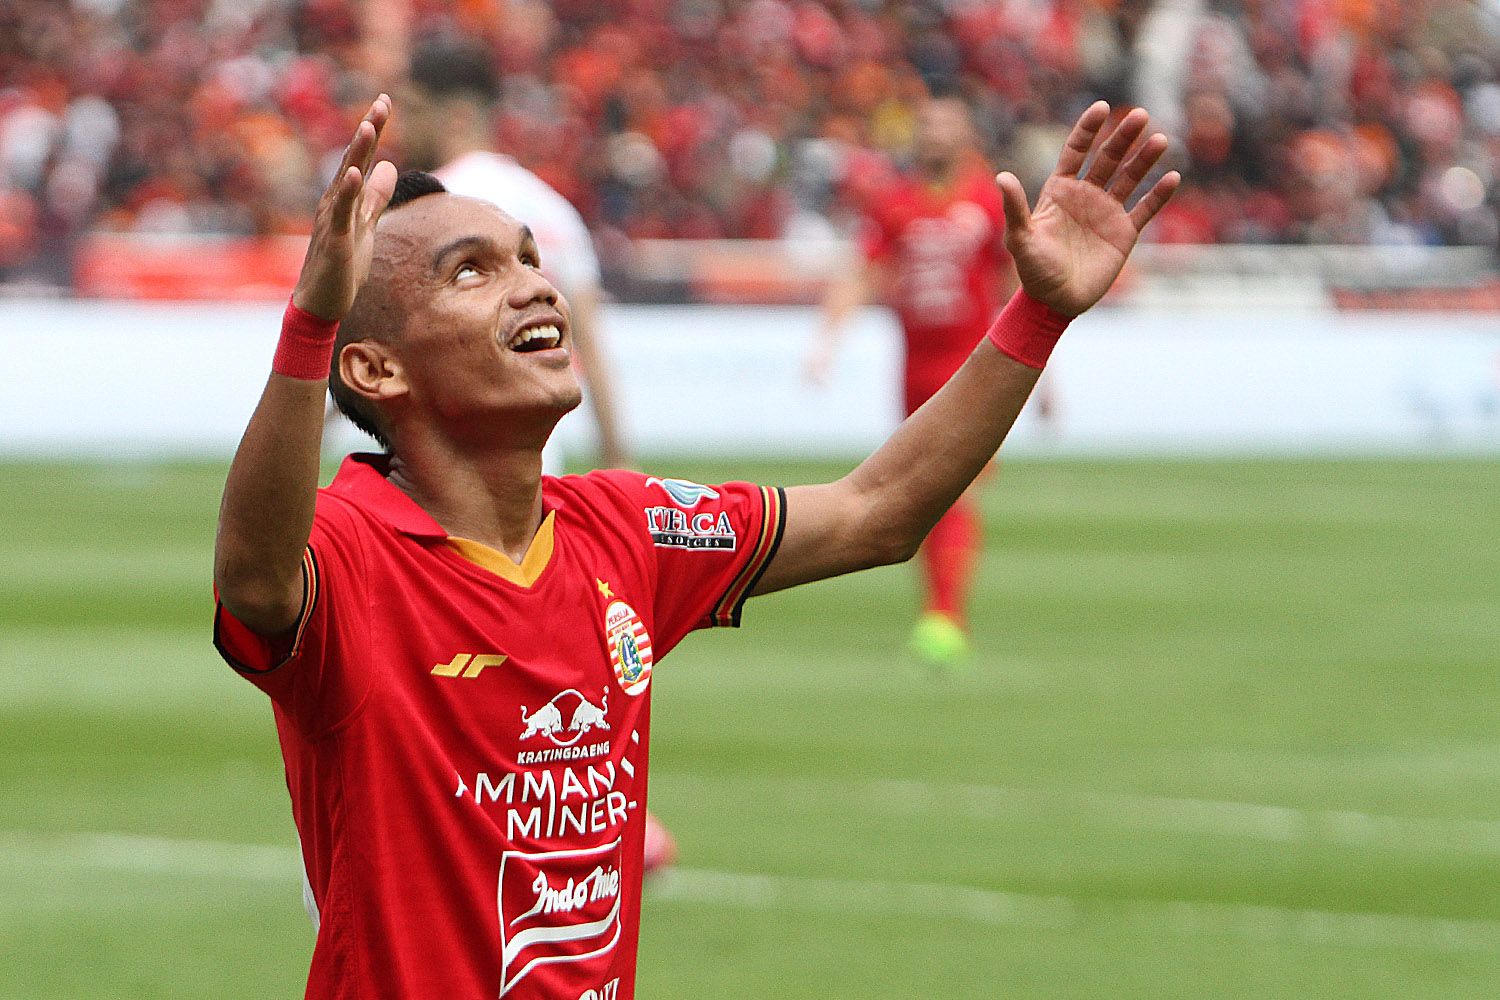 Penyerang sayap Persija, Riko Simanjuntak, semringah setelah rekannya melesakkan gol dalam laga Liga 1 2020 menghadapi Borneo FC di Stadion Utama Gelora Bung Karno, Jakarta pada 1 Maret 2020.